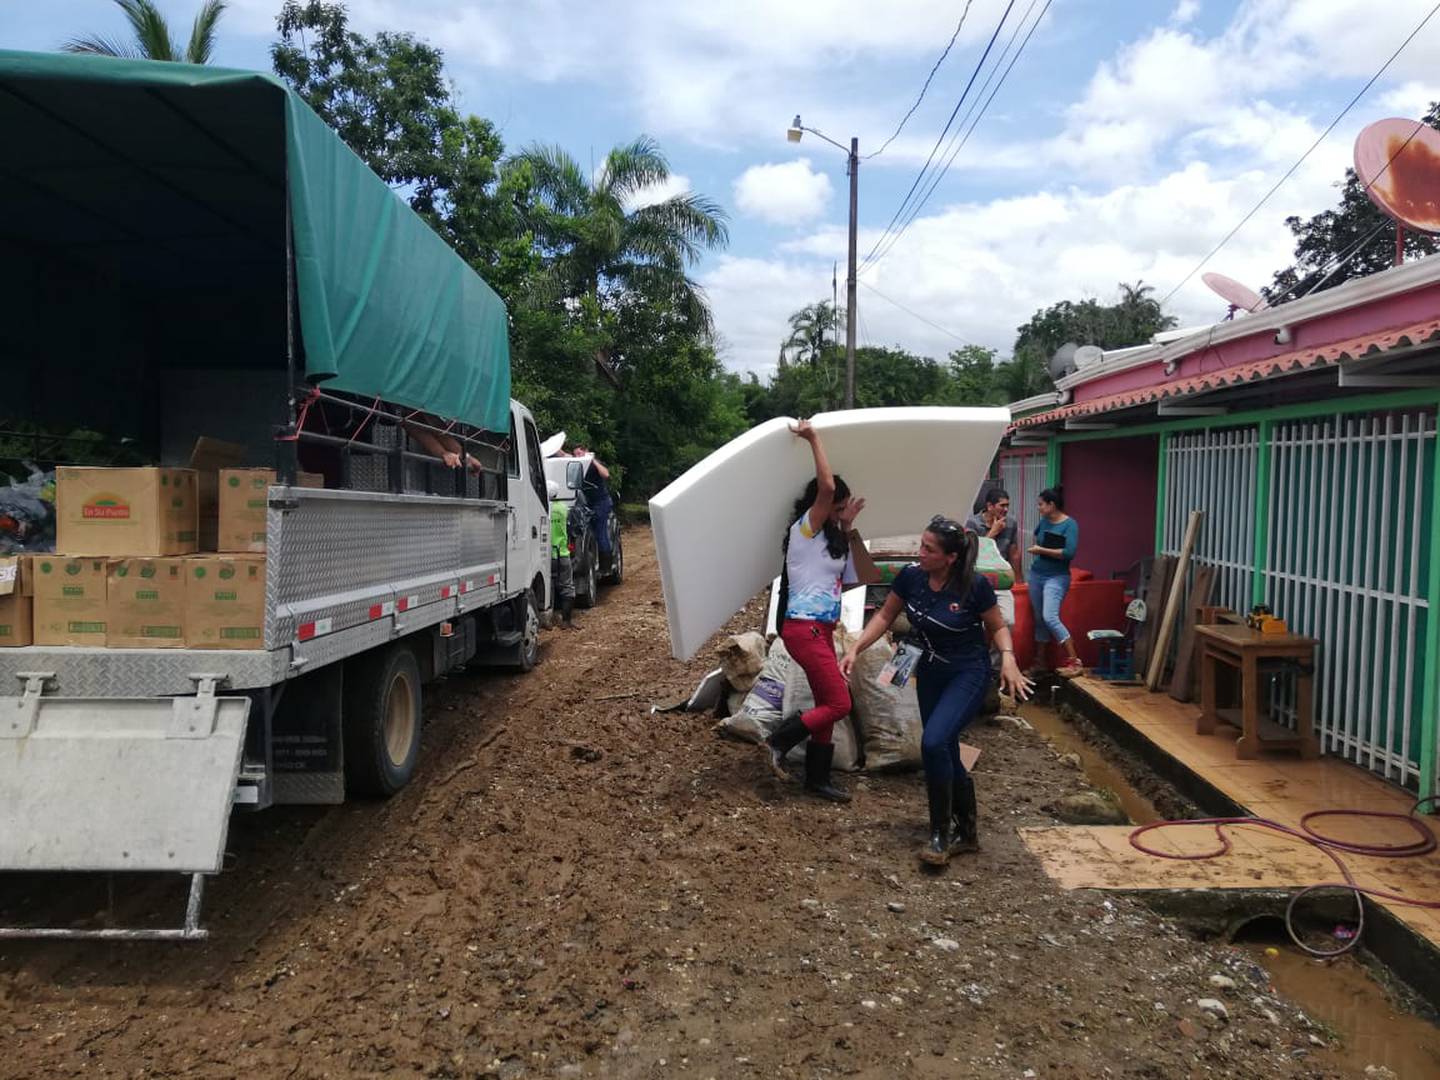 Los cuerpos de socorro están en la zona afectada. La CNE repartió espumas, cobijas y diarios este martes entre la población afectada. Foto: Cortesía CNE.